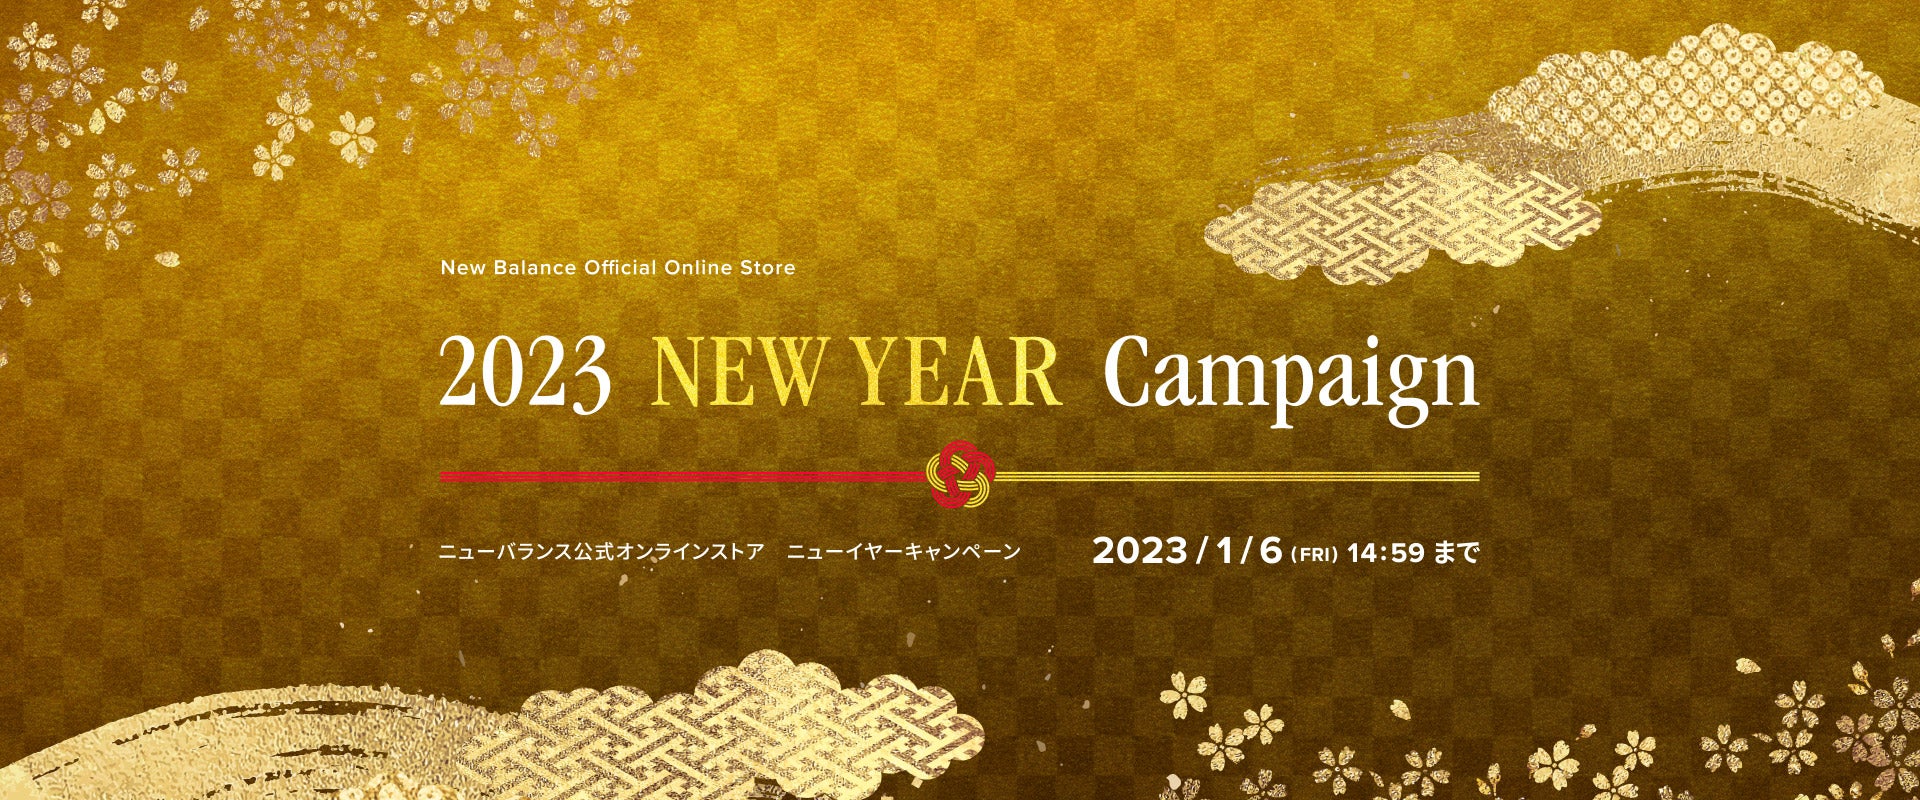 2023 New Year Campaign. 2023年1月6日(金)14:59まで